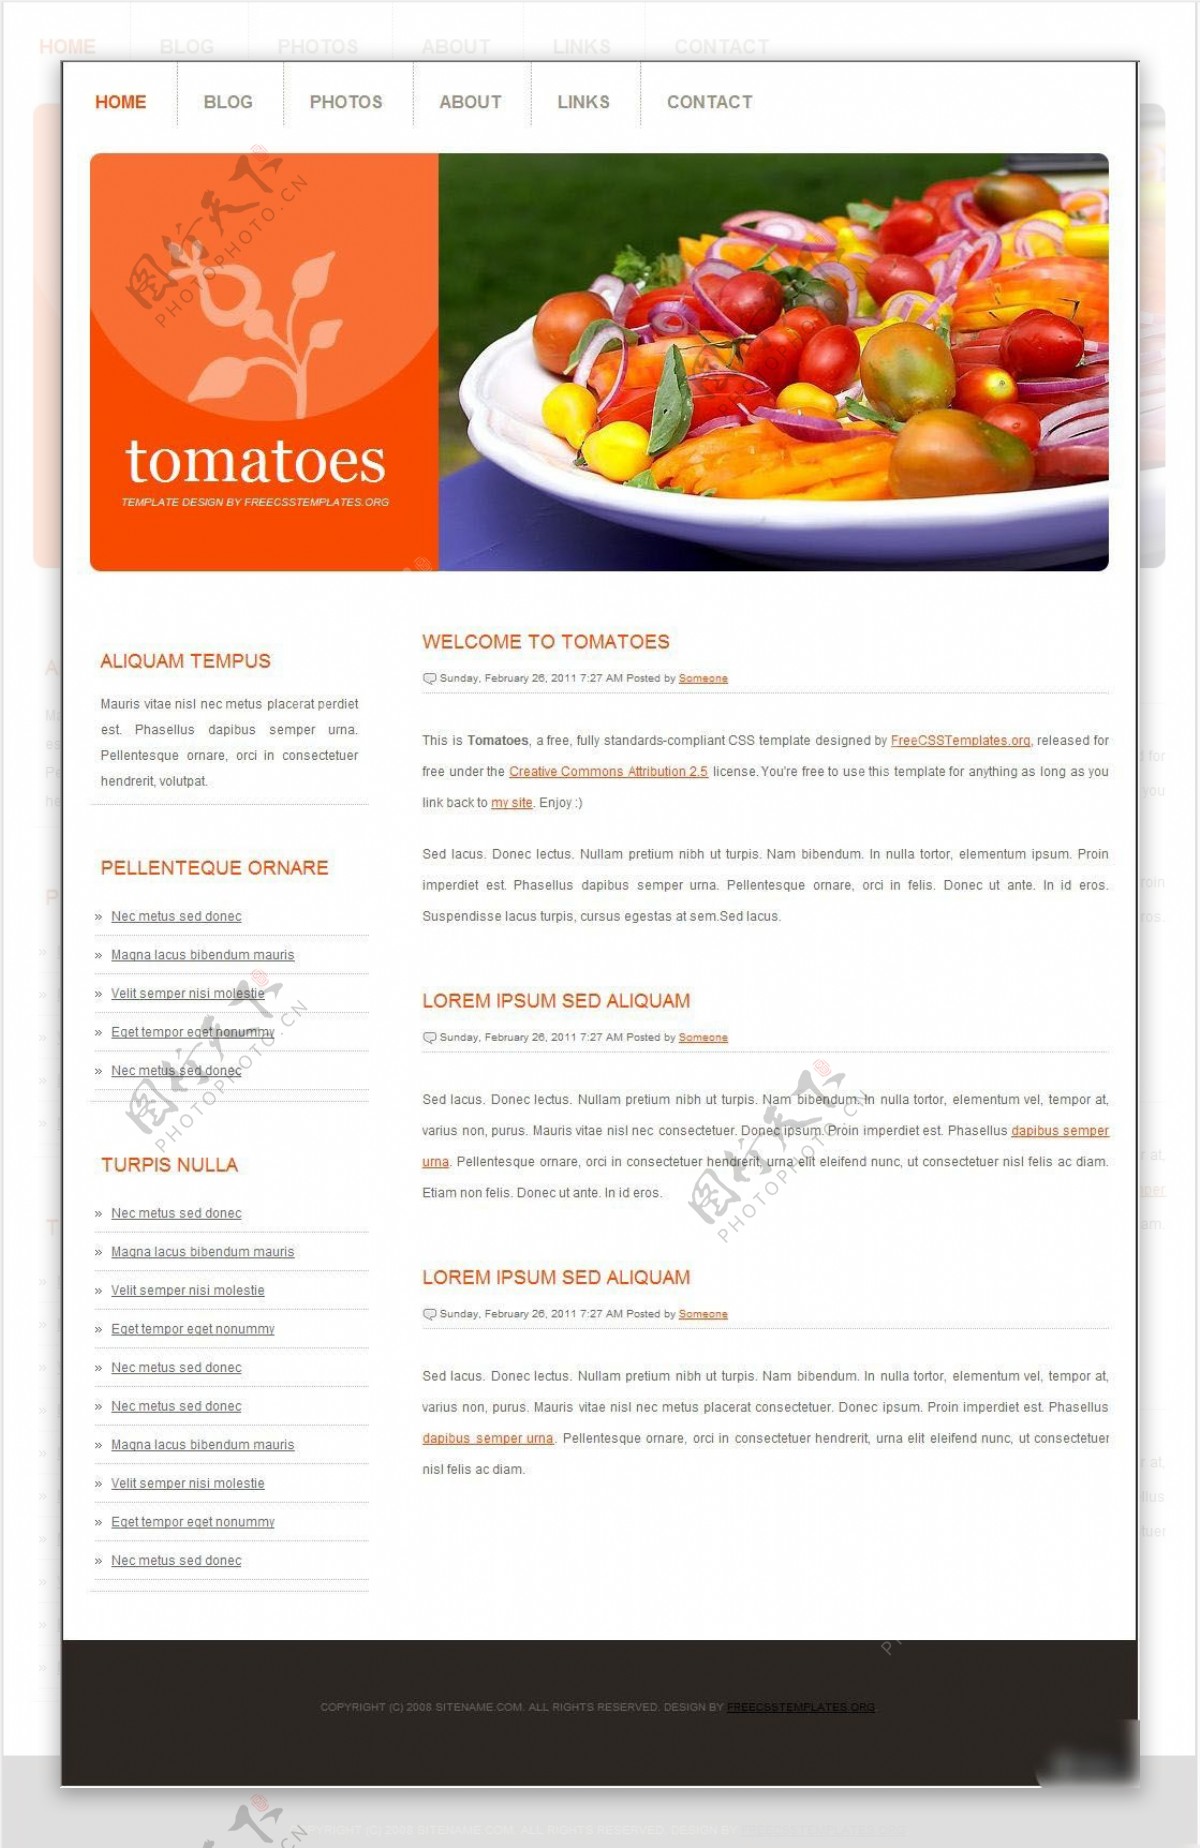 餐饮宣传网页设计